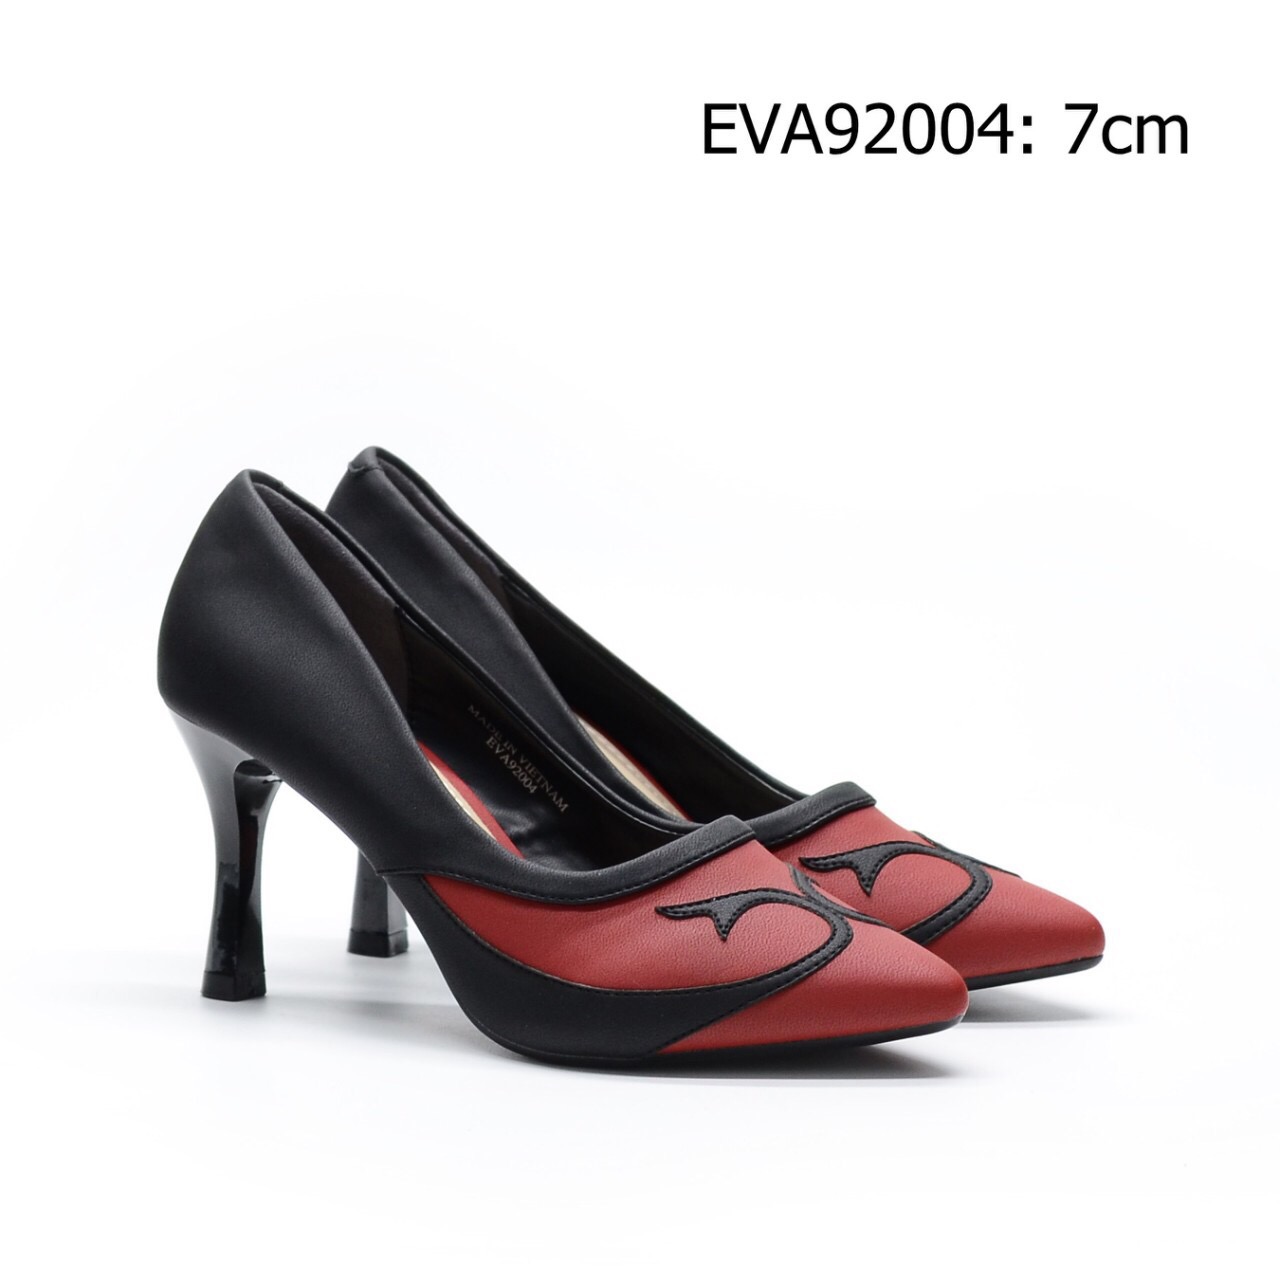 Giày cao gót nữ EVA92004 kiểu dáng thời trang, độc đáo